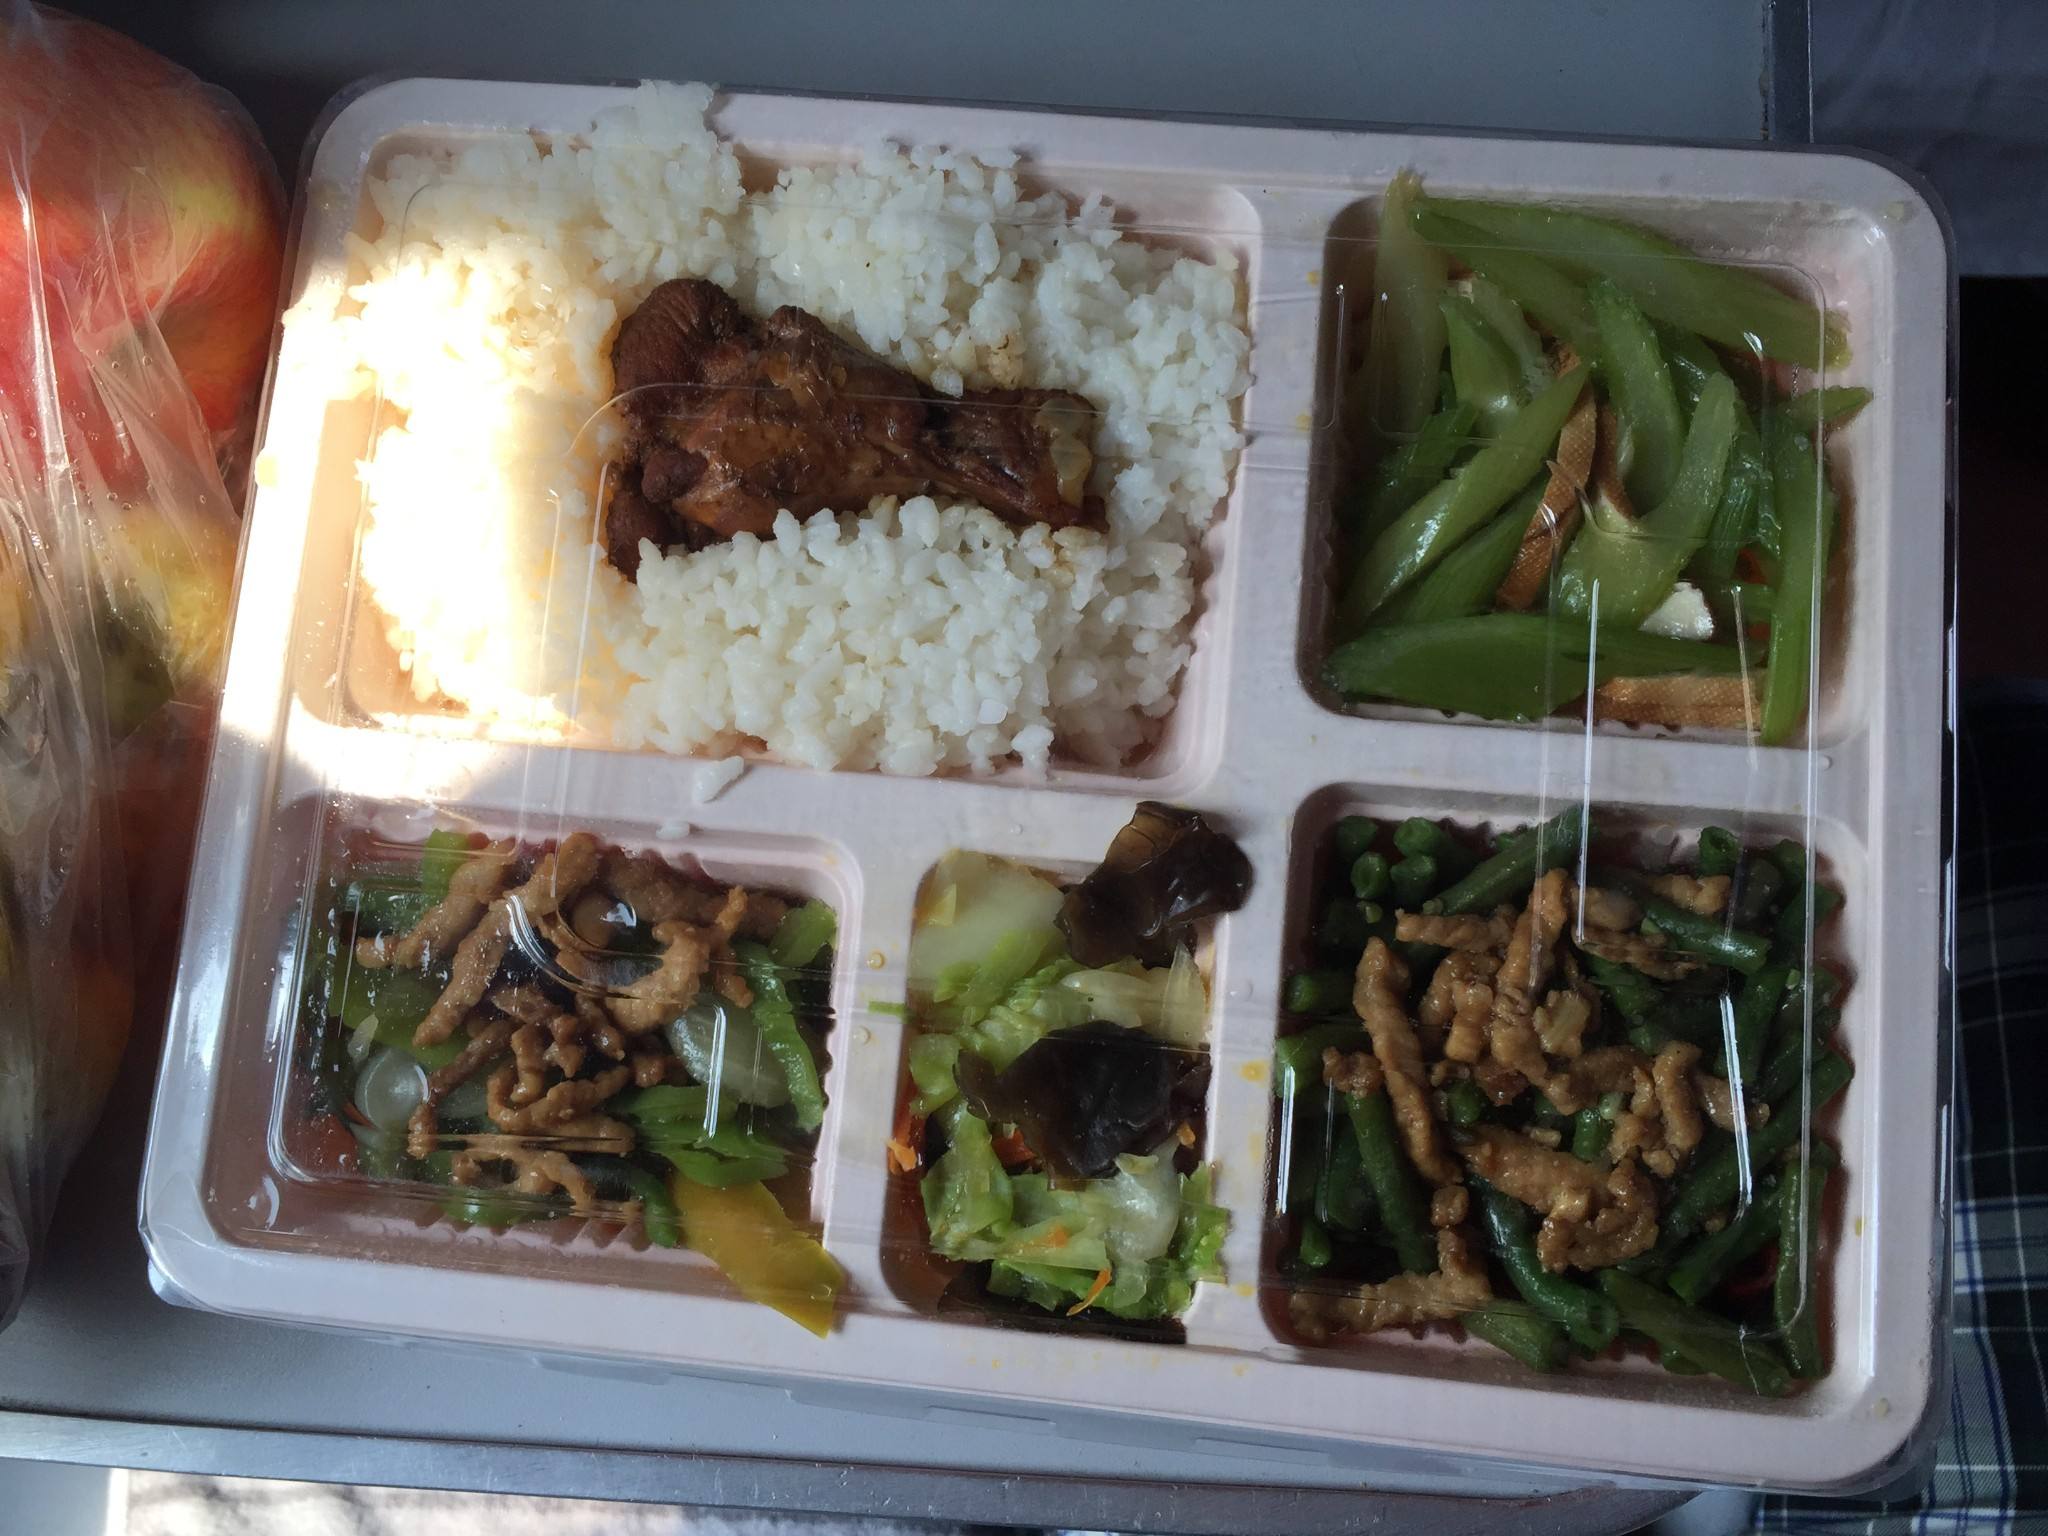 中国春运火车上的盒饭!这样的搭配,你觉得30元一盒贵吗?